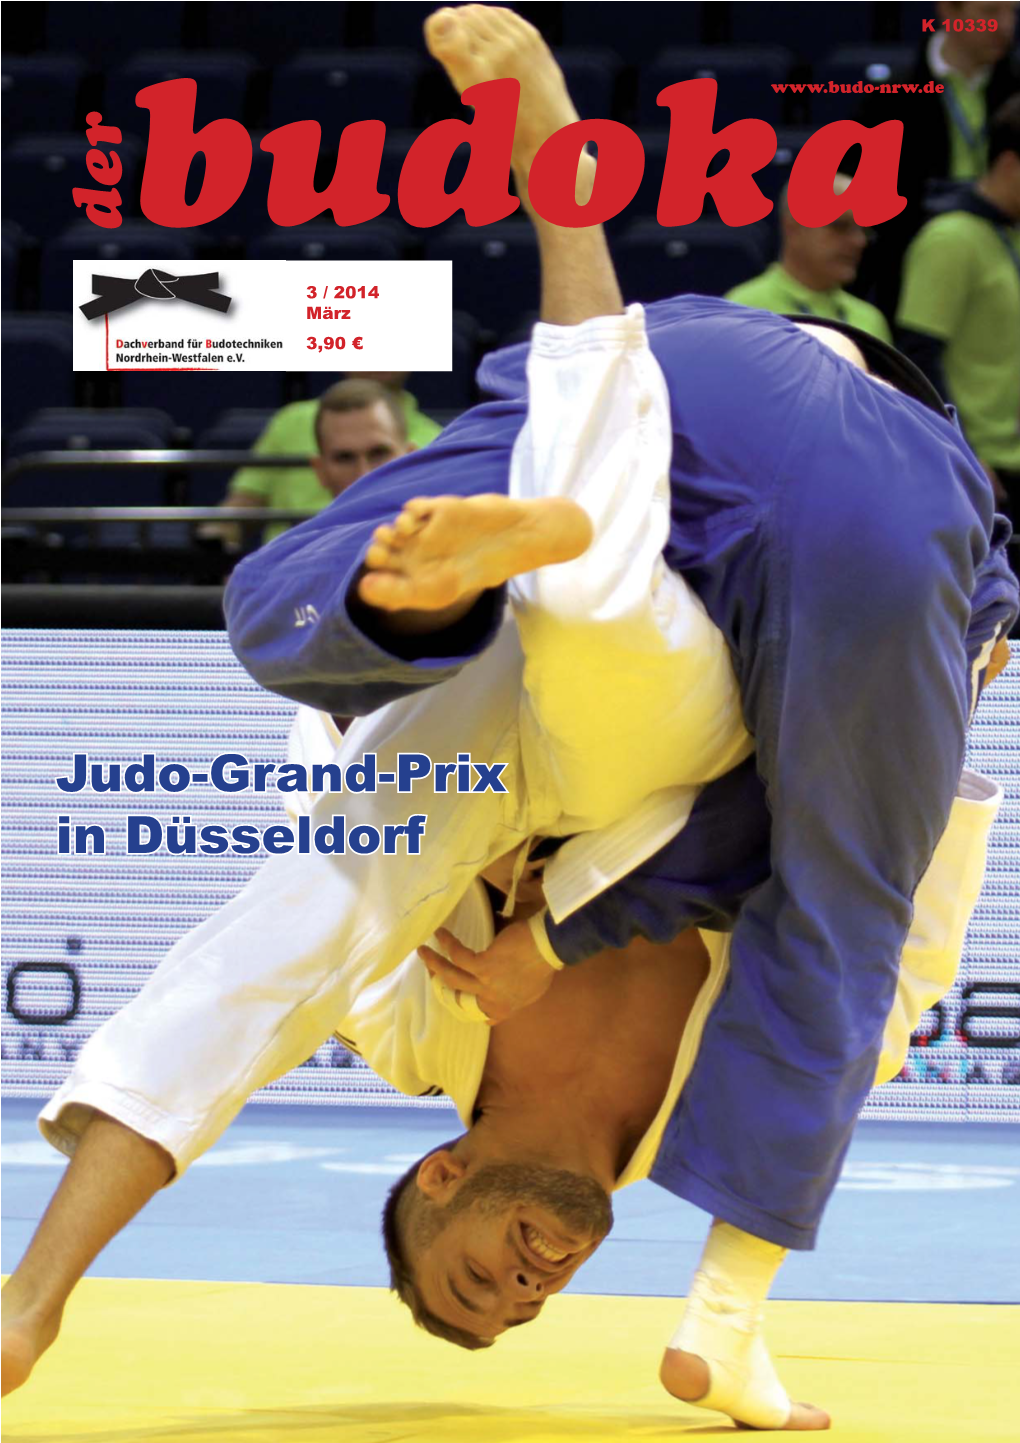 Judo-Grand-Prix in Düsseldorf Dachverband Für Budotechniken Nordrhein-Westfalen E.V